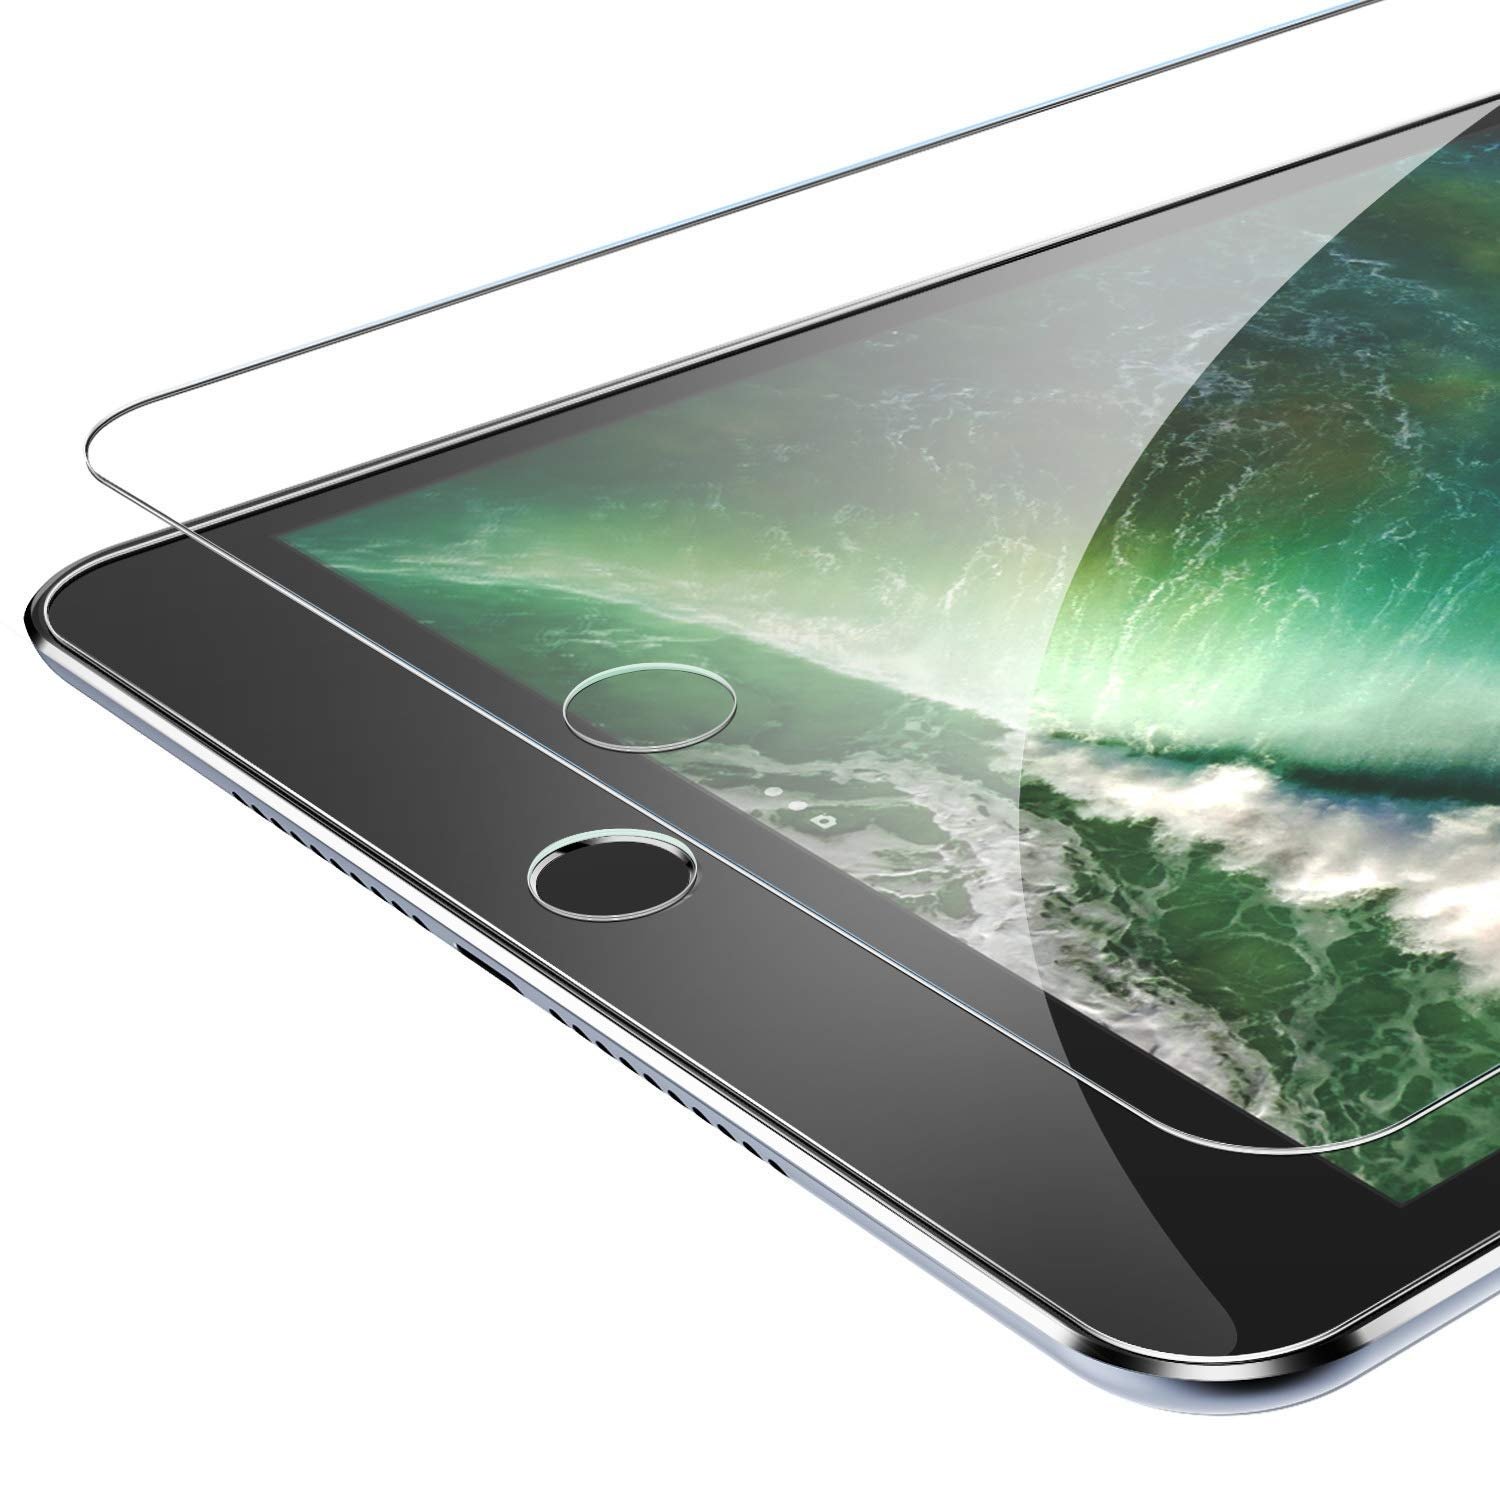 Si el cristal de los iPhone fuera tan solo 1 mm más grueso serían casi irrompibles